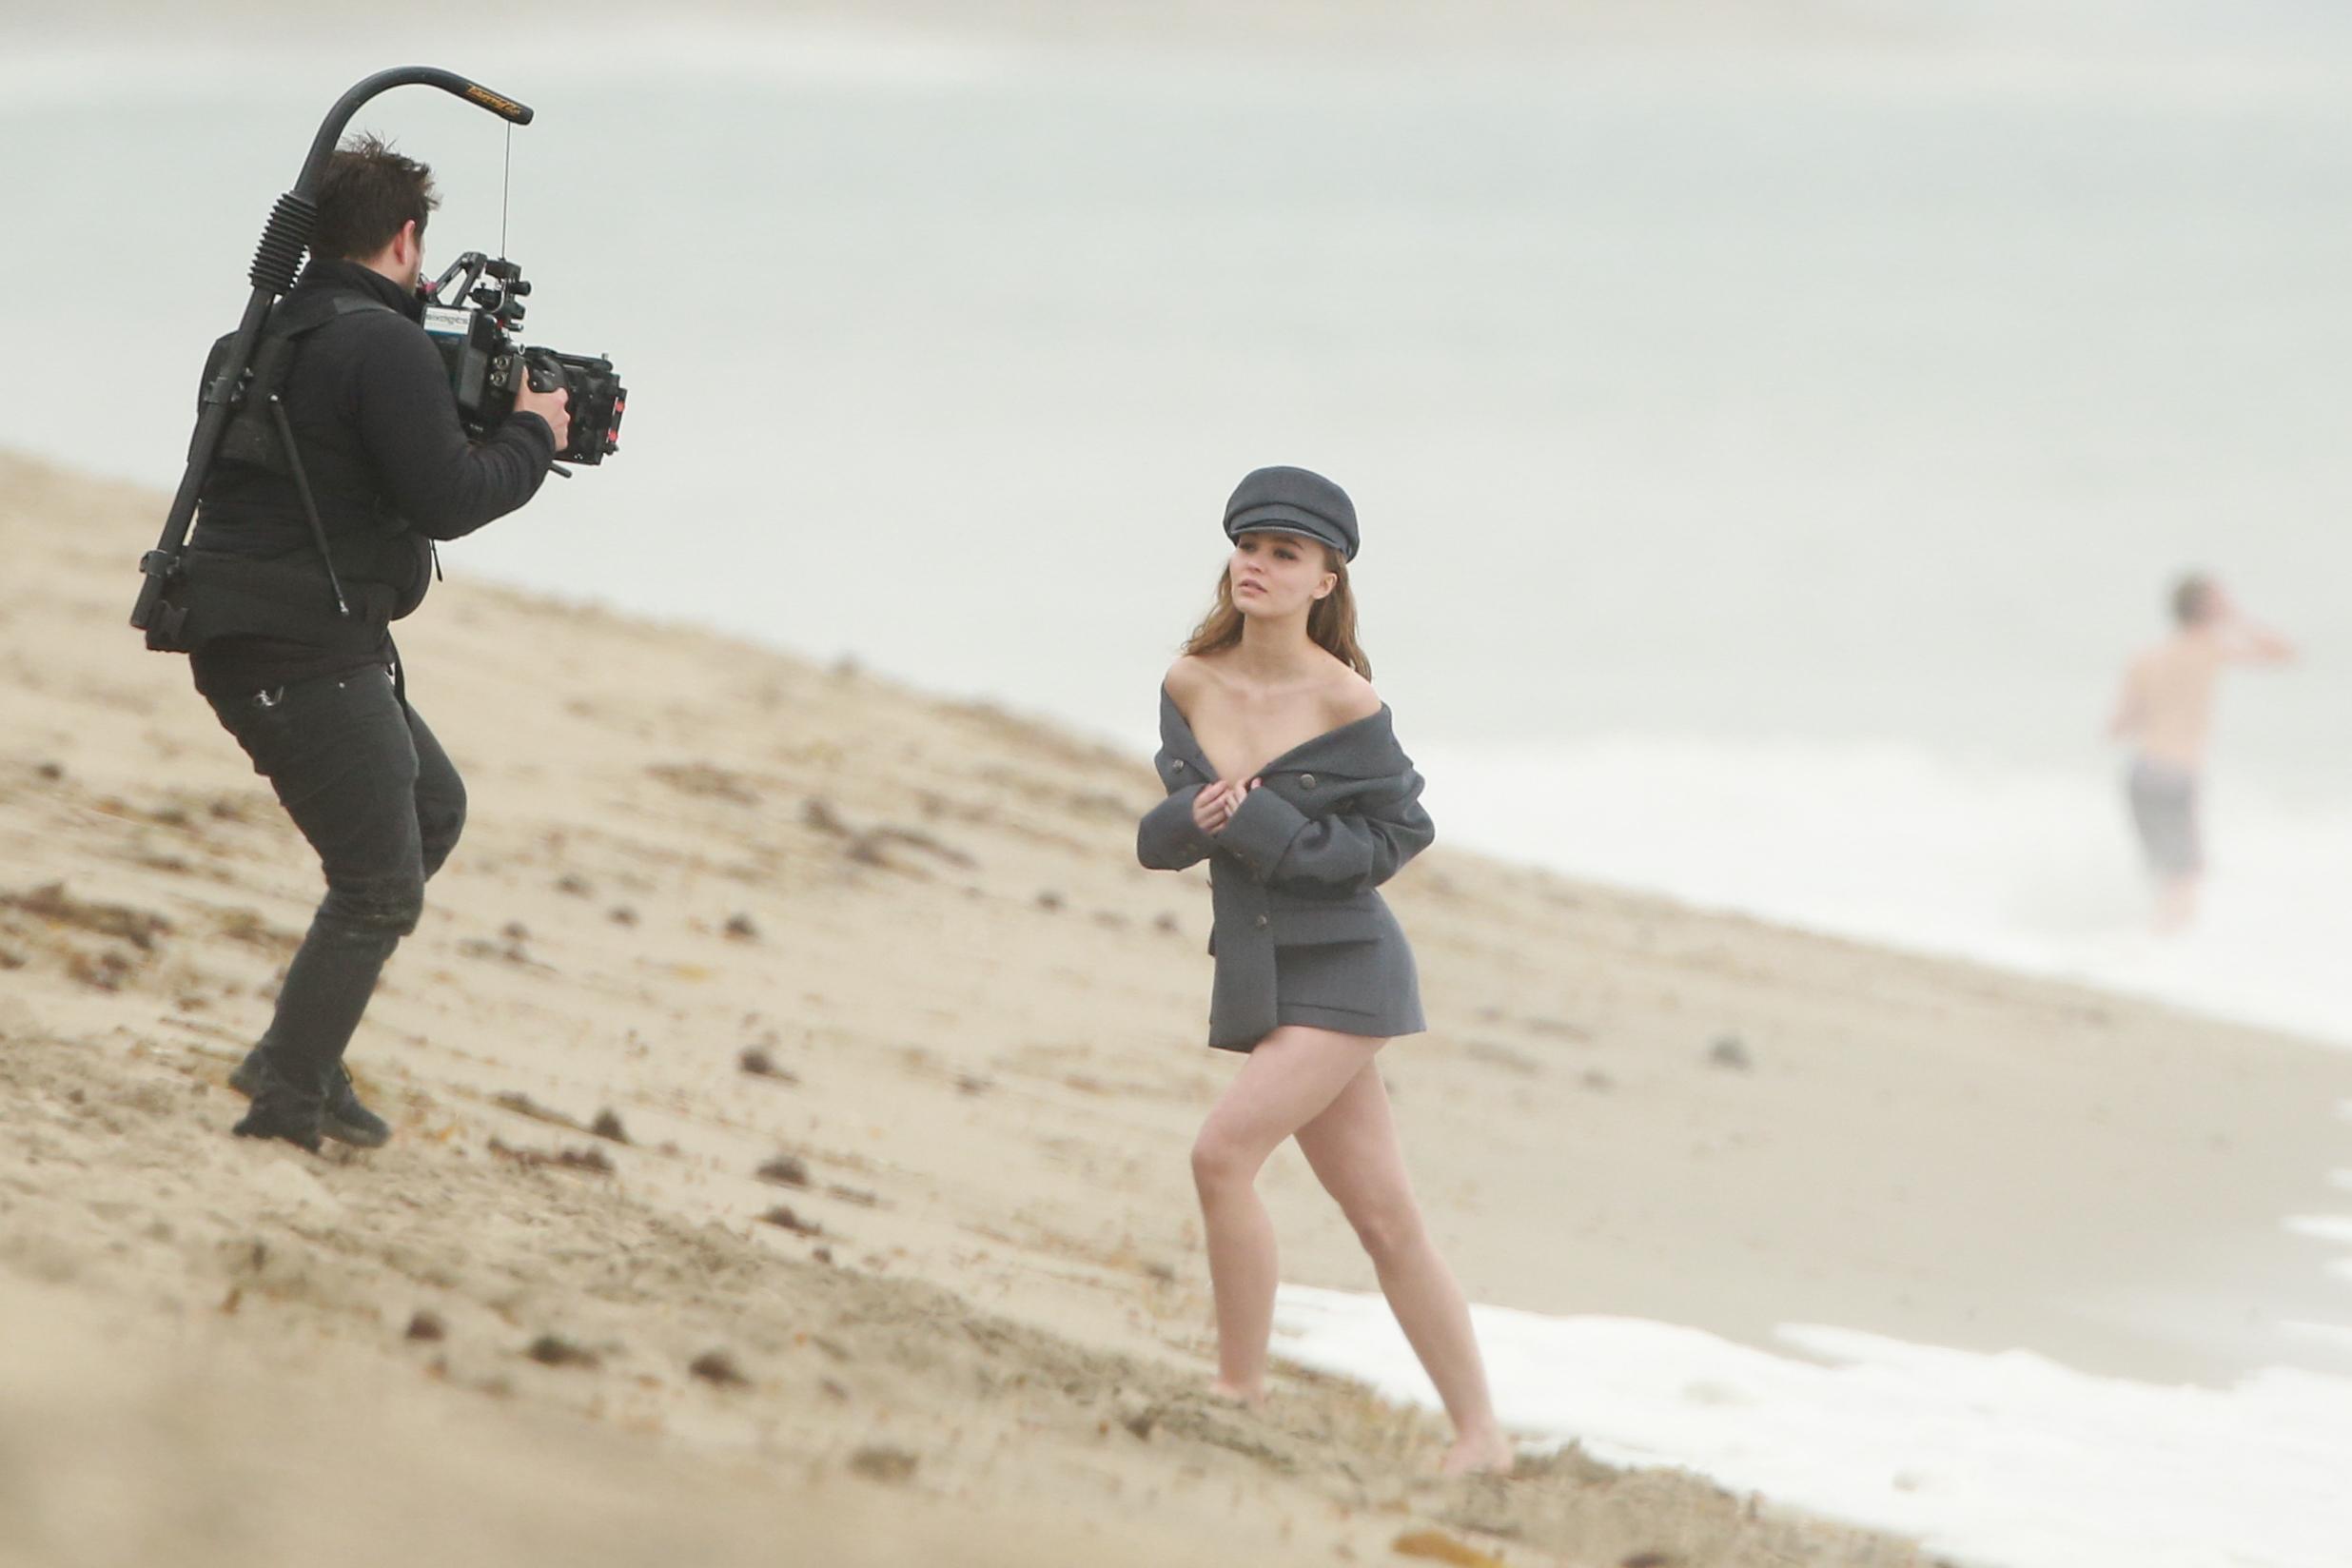 Lily Rose Depp ona fashion photoshoot in Malibu. 